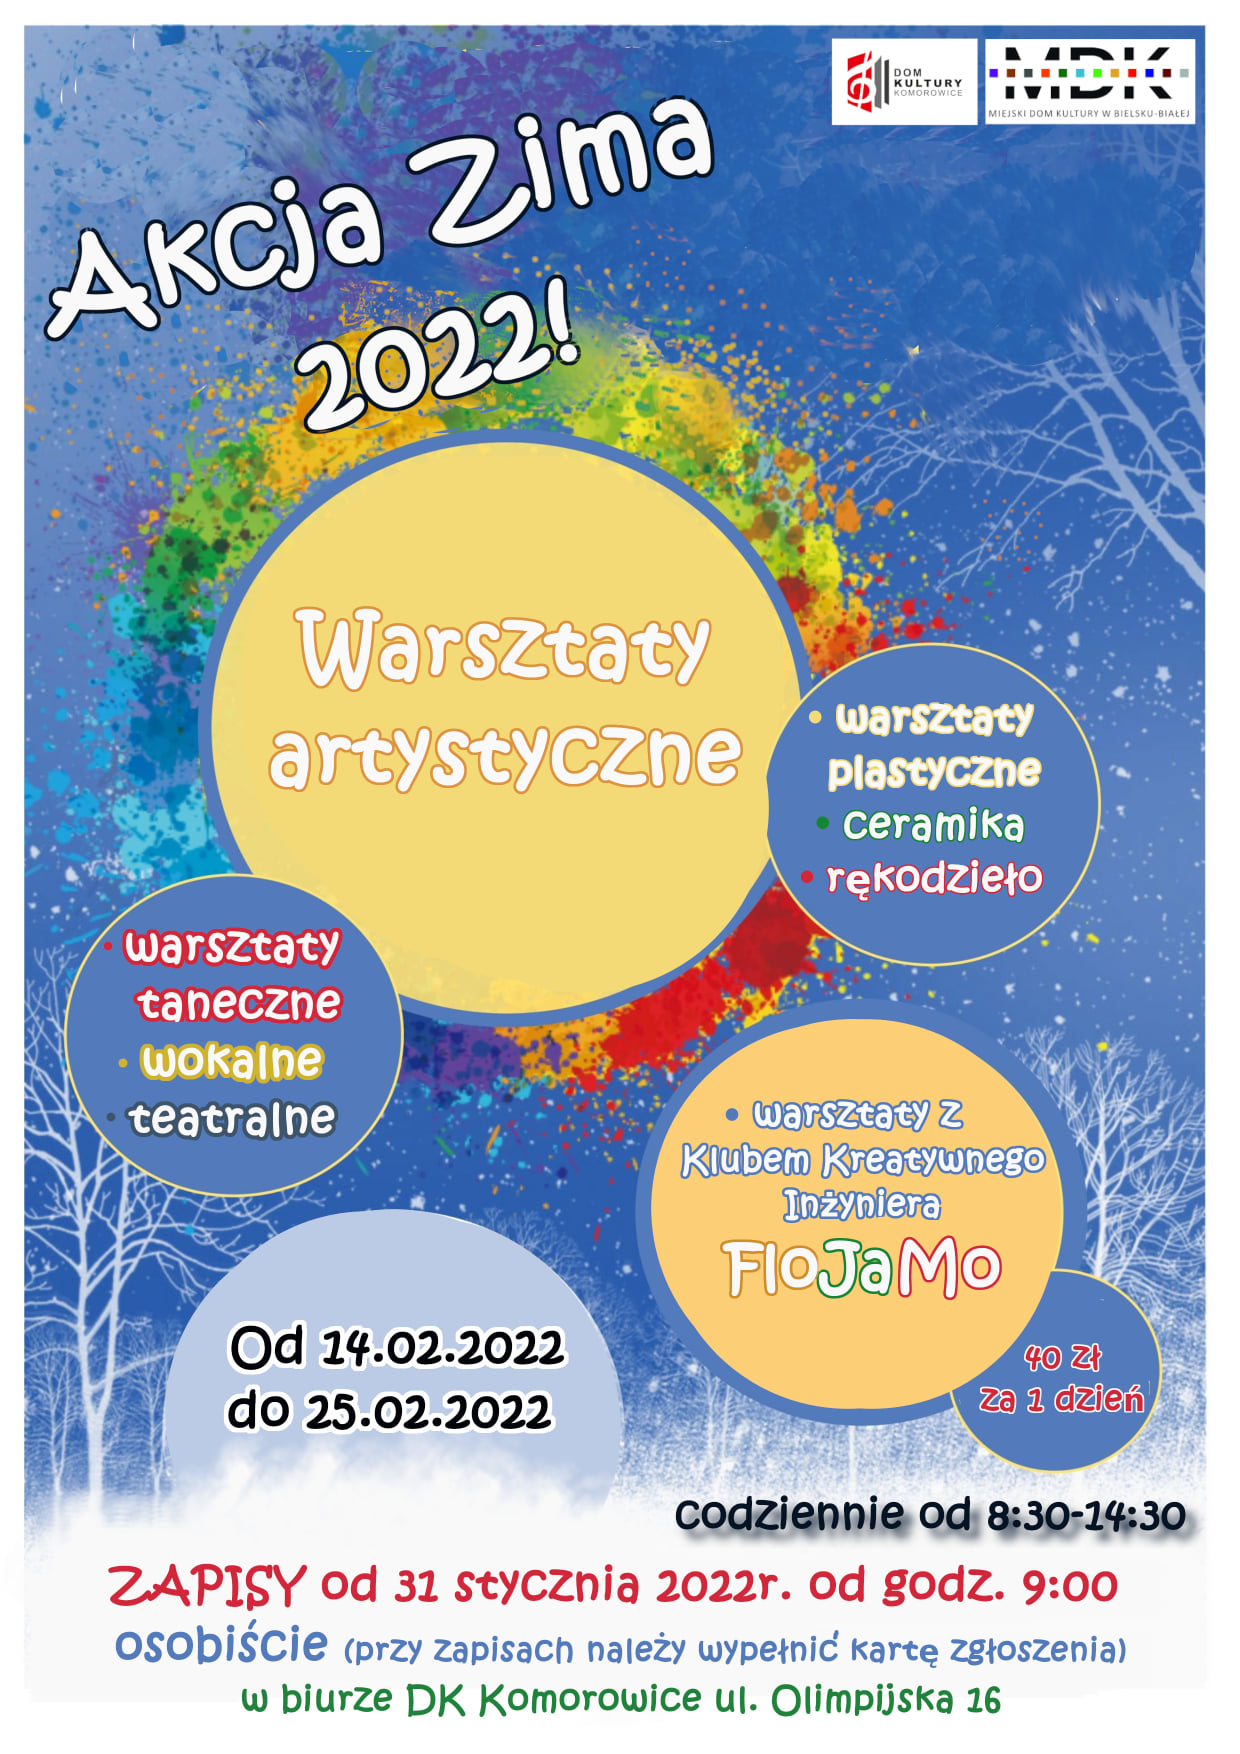  Do Kultury w Komorowicach: Akcja Zima Na zdjęciu plakat imprezy